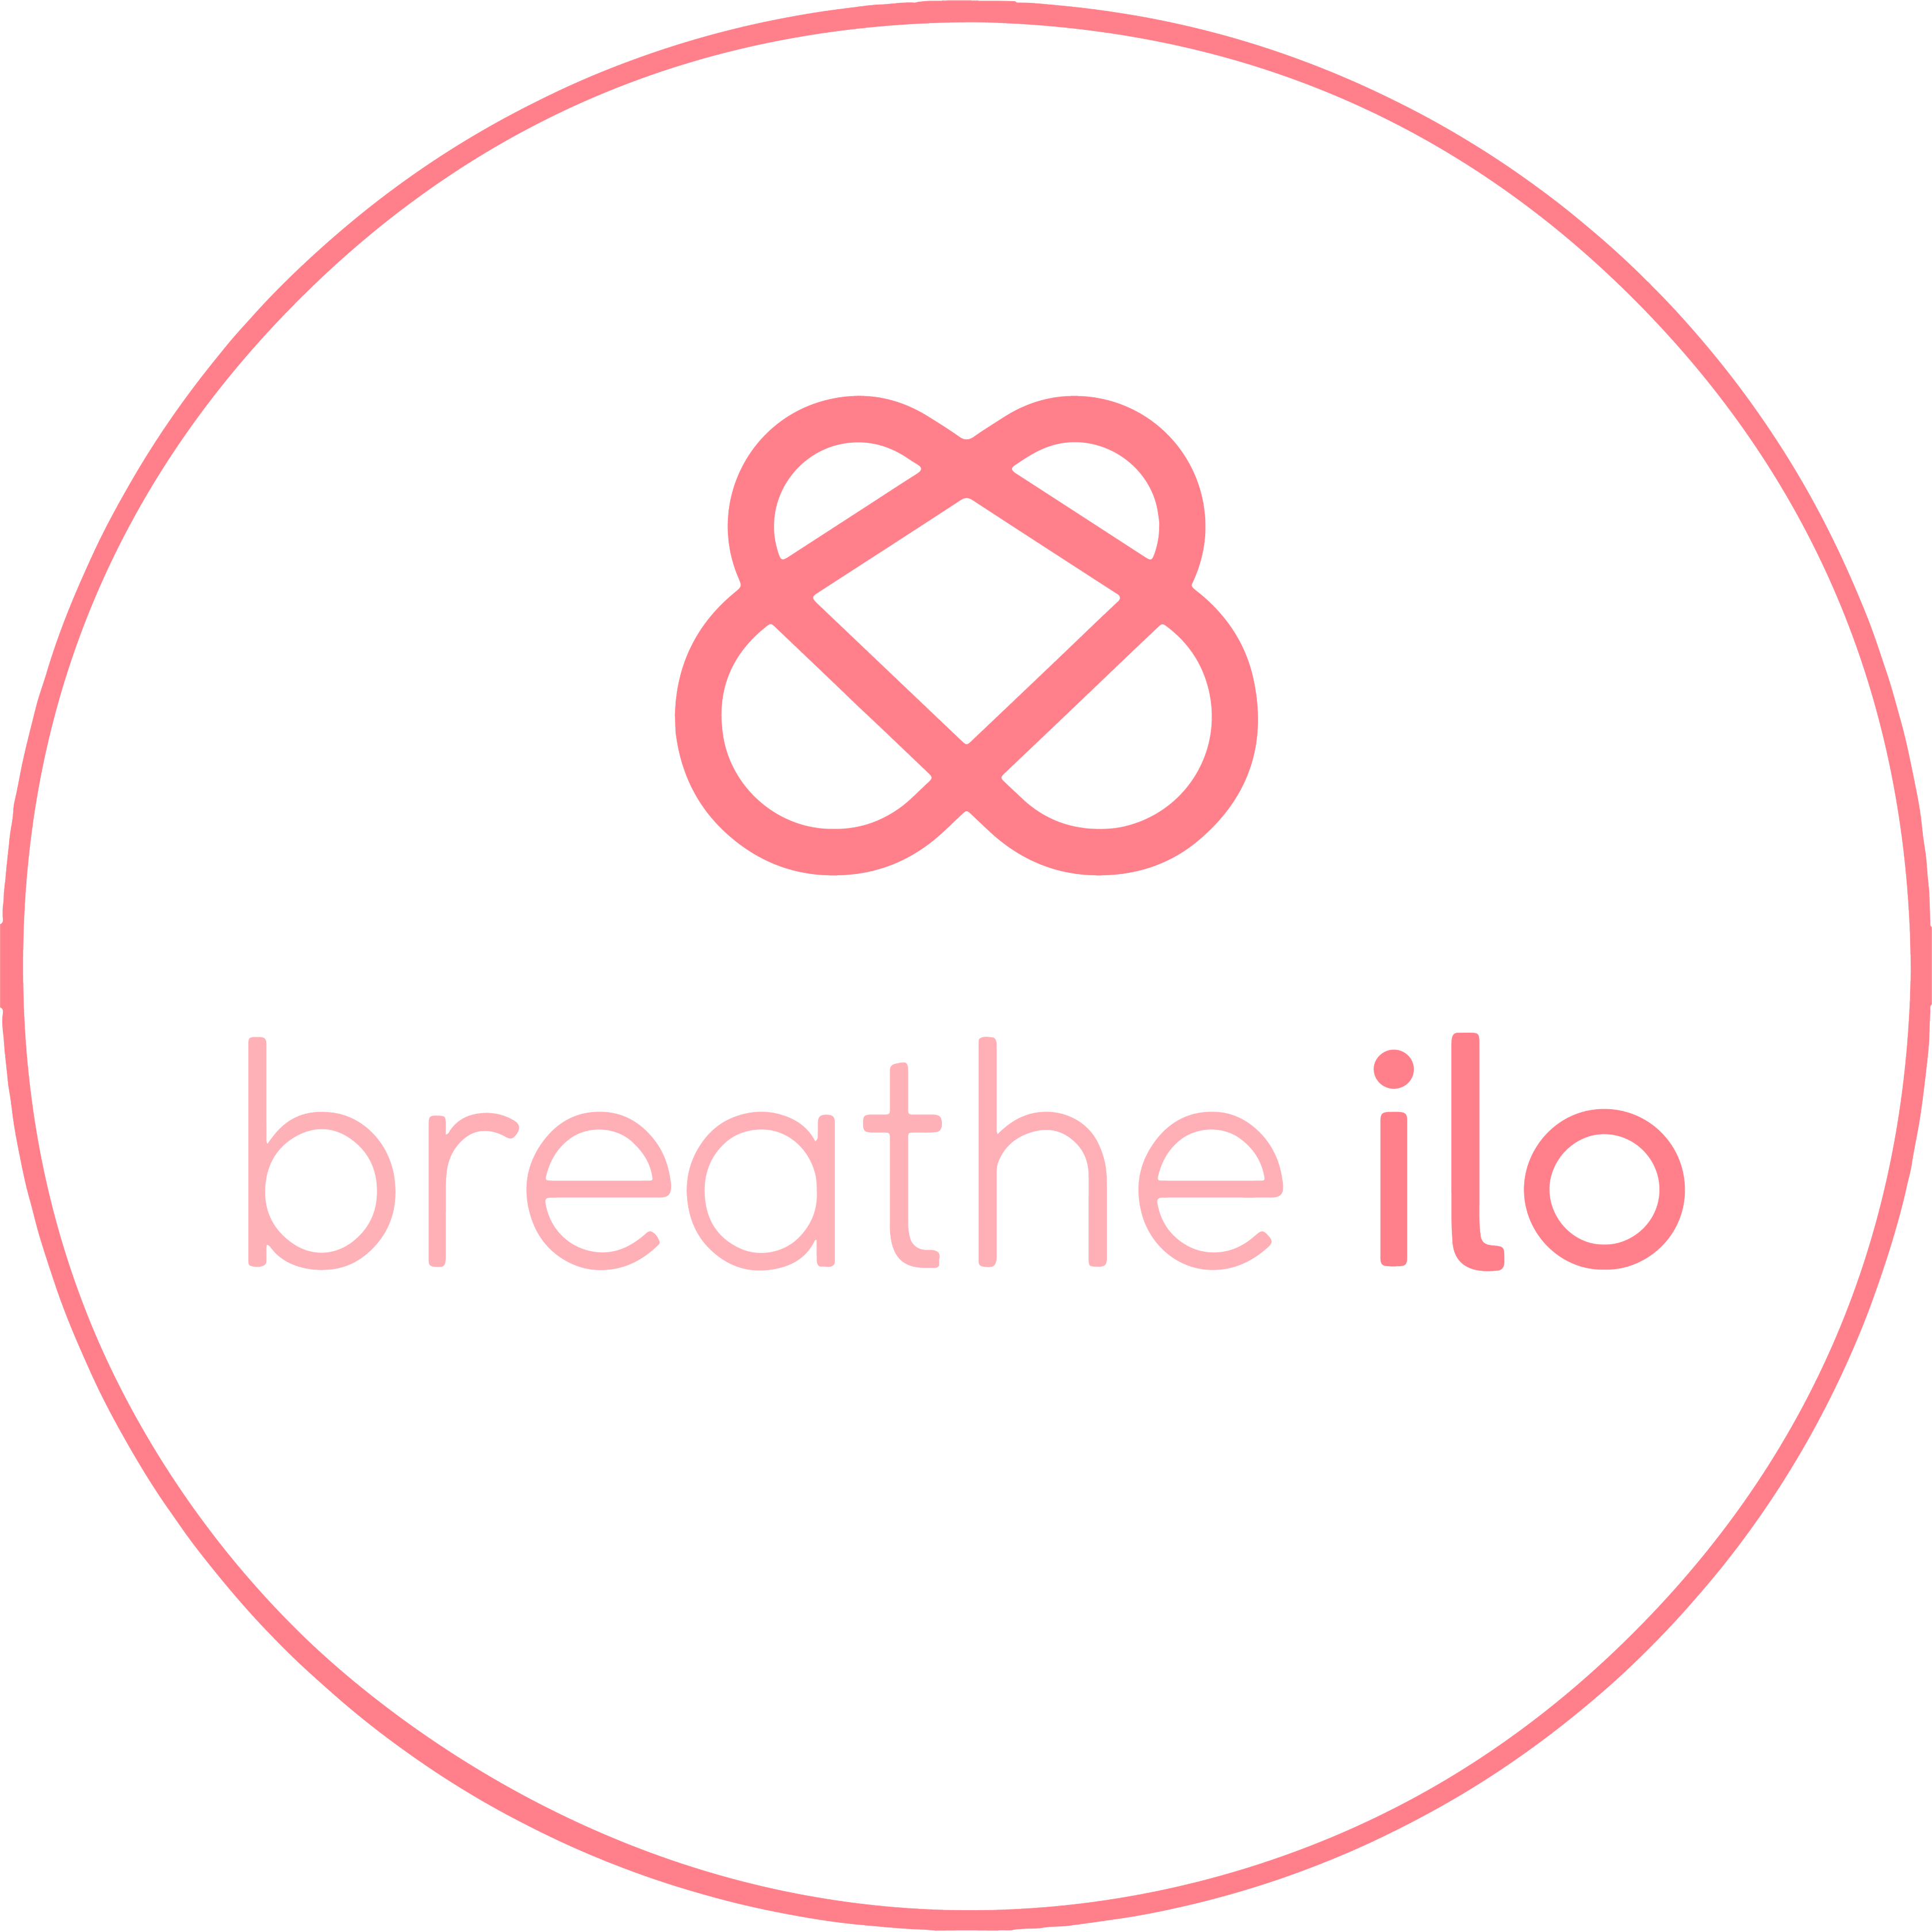 Breathe ilo Logo